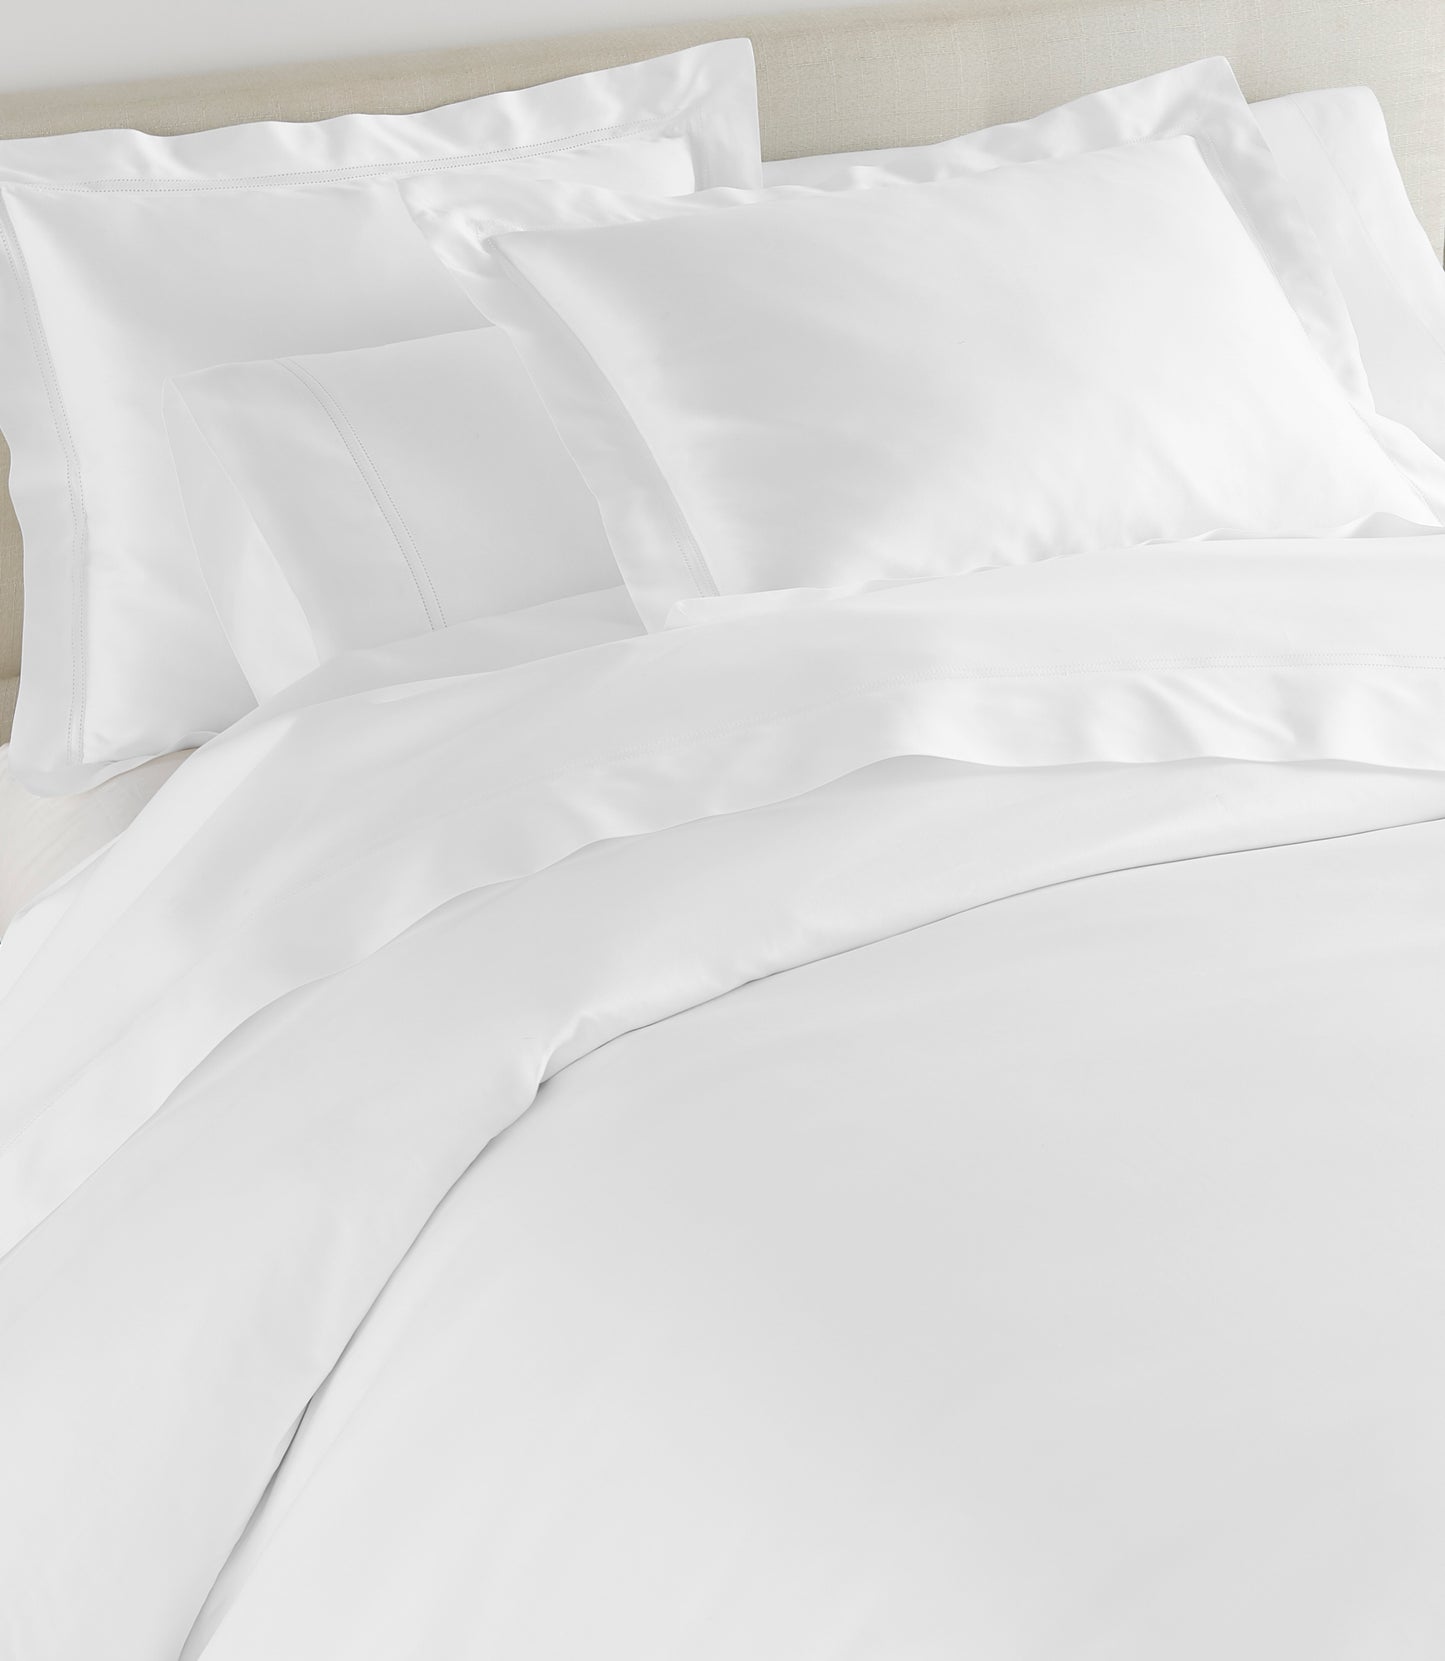 Virtuoso White Duvet Cover on Bed